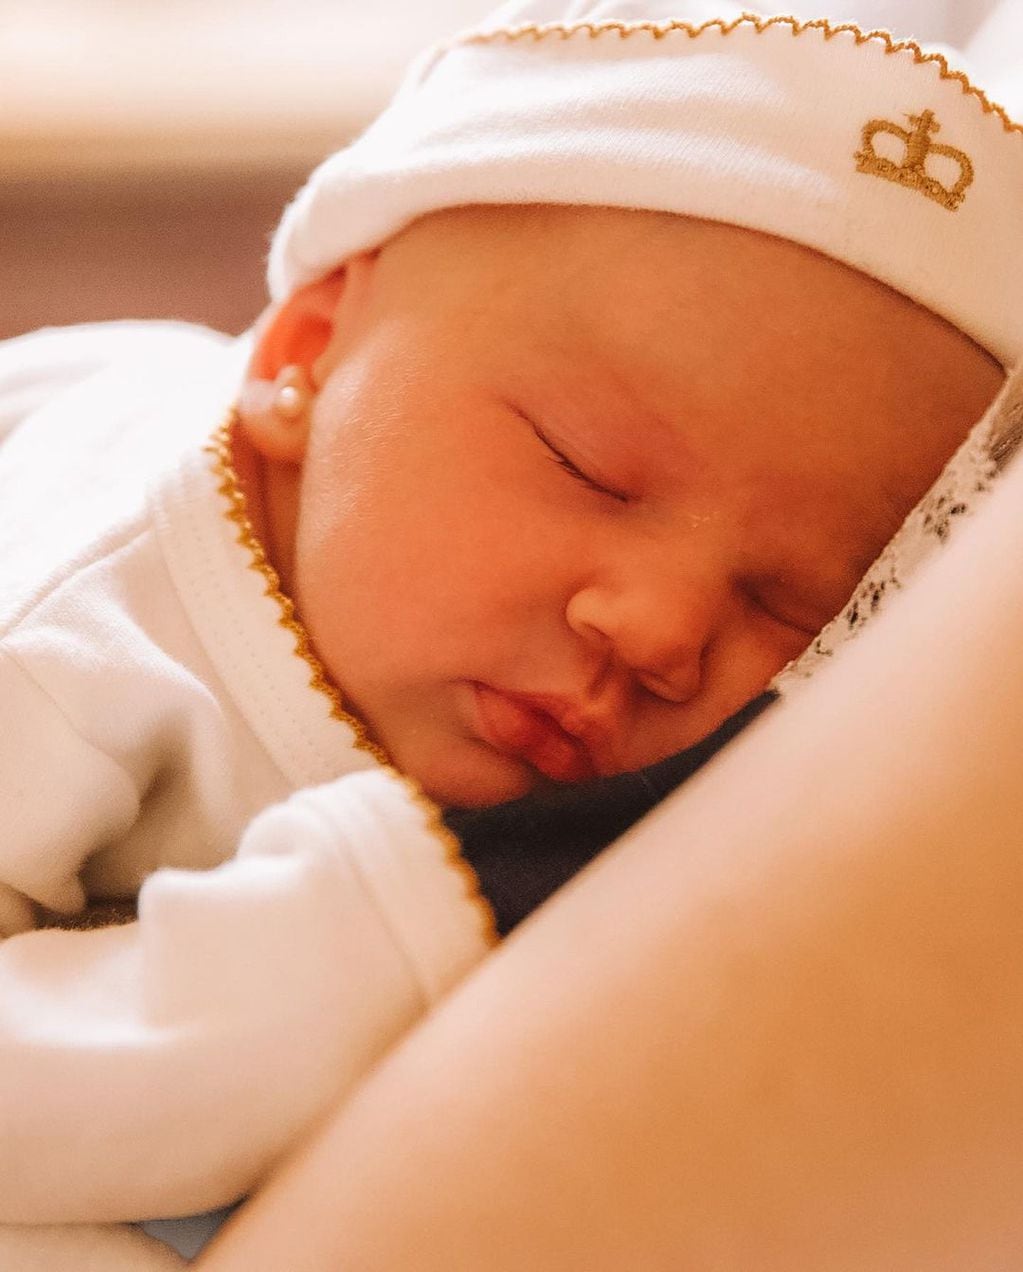 Stephanie Demner y Guido Pella mostraron el rostro de Ari, su beba recién nacida